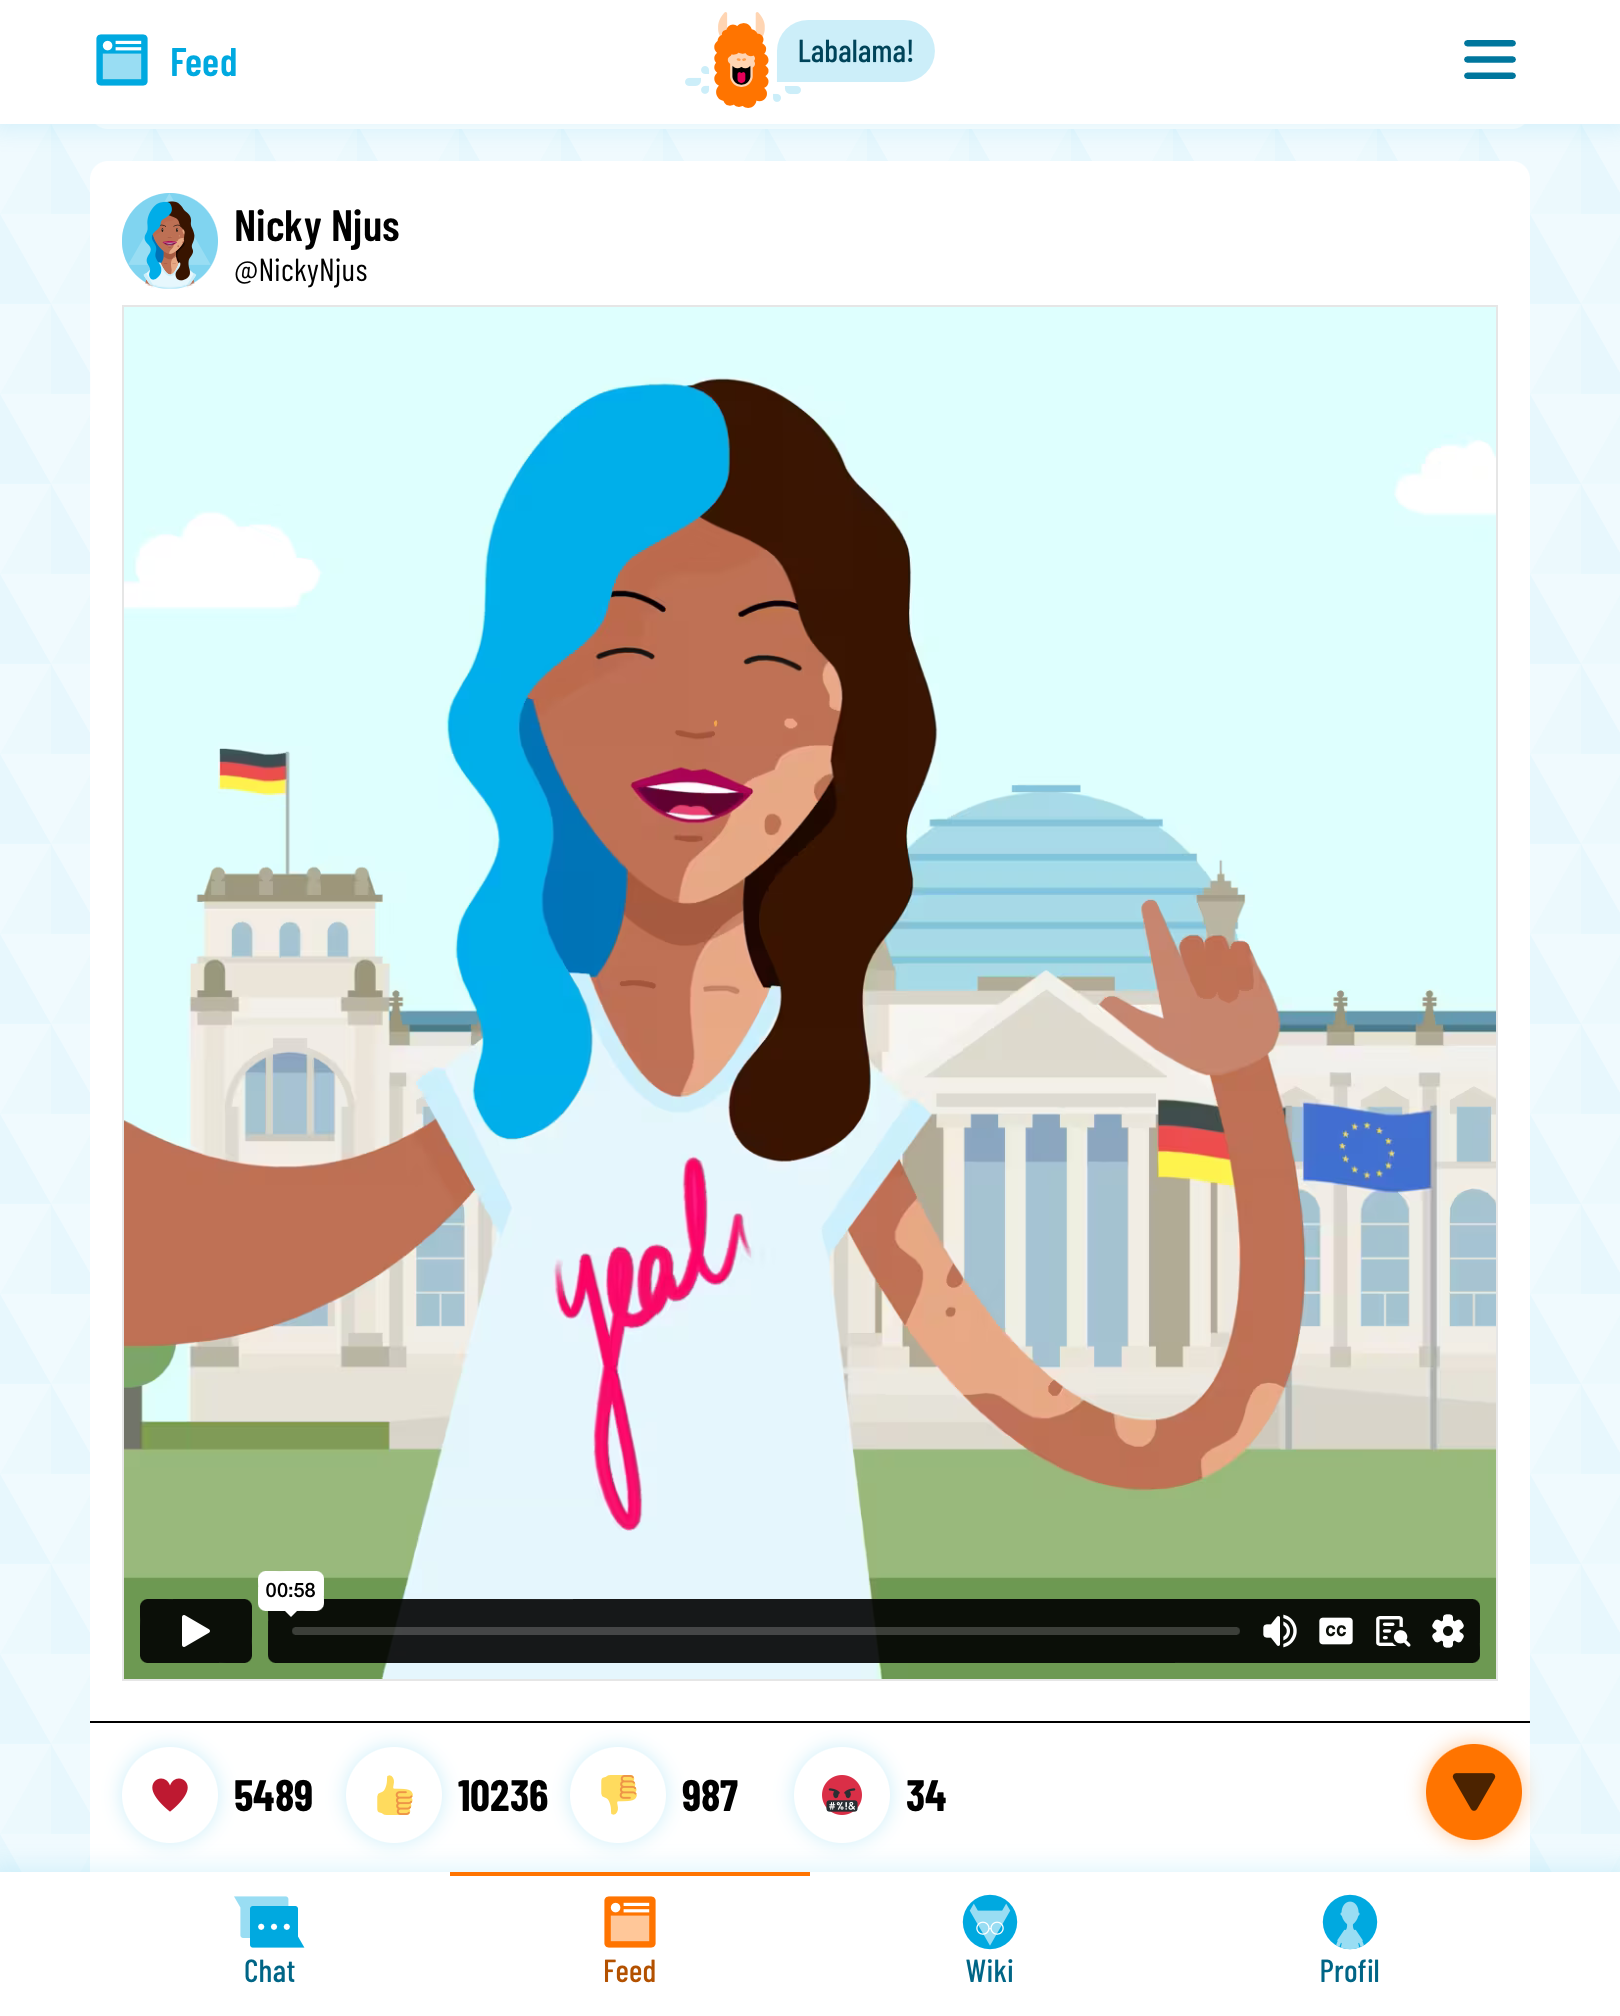 Man sieht einen Beitrag von Nicky Nius auf dem sozialen Netzwerk Labalama. Es ist ein Video, in dem sie vor dem Reichstags-Gebäude steht und über den Hack auf die Bundestagswahlen berichtet.